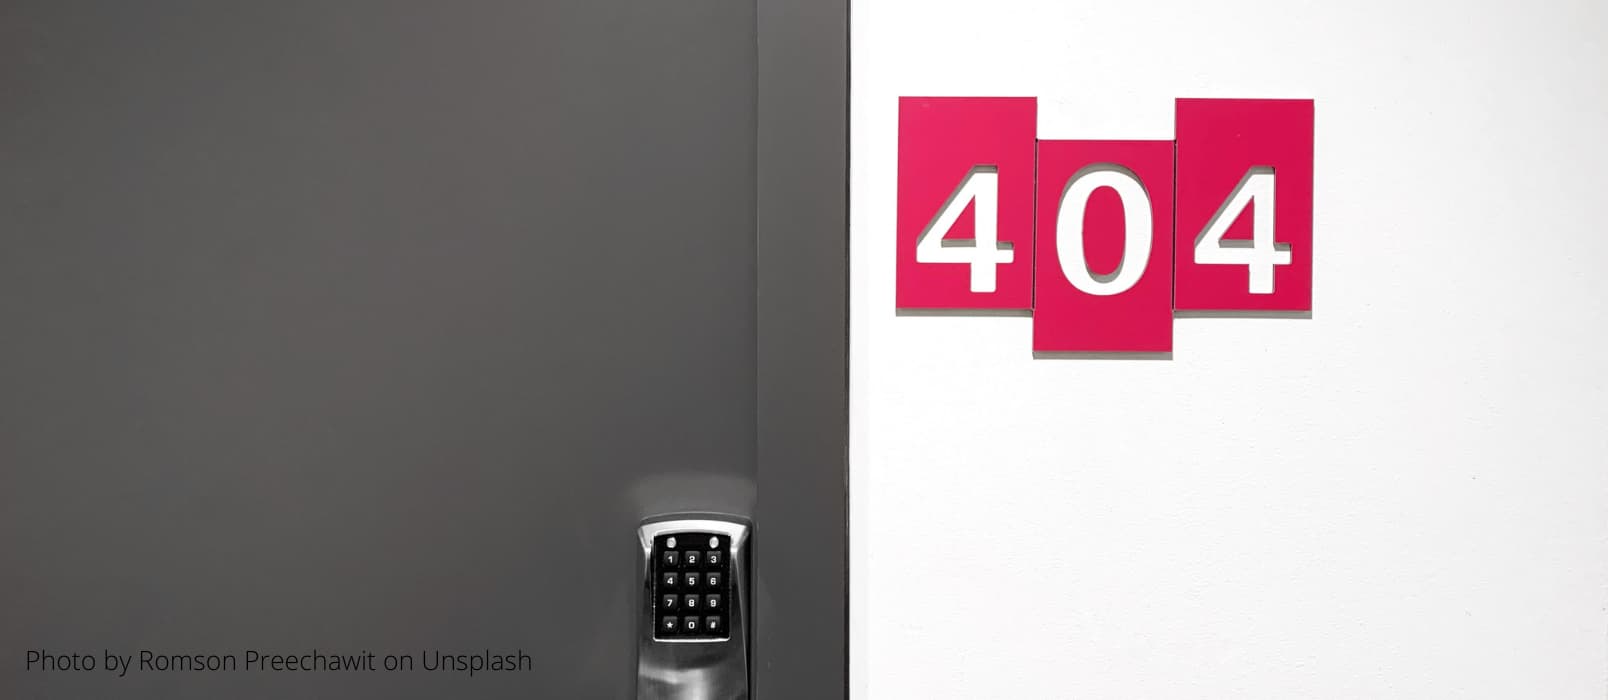 【白话科普】上网时遇到的 404 是什么意思？ 1